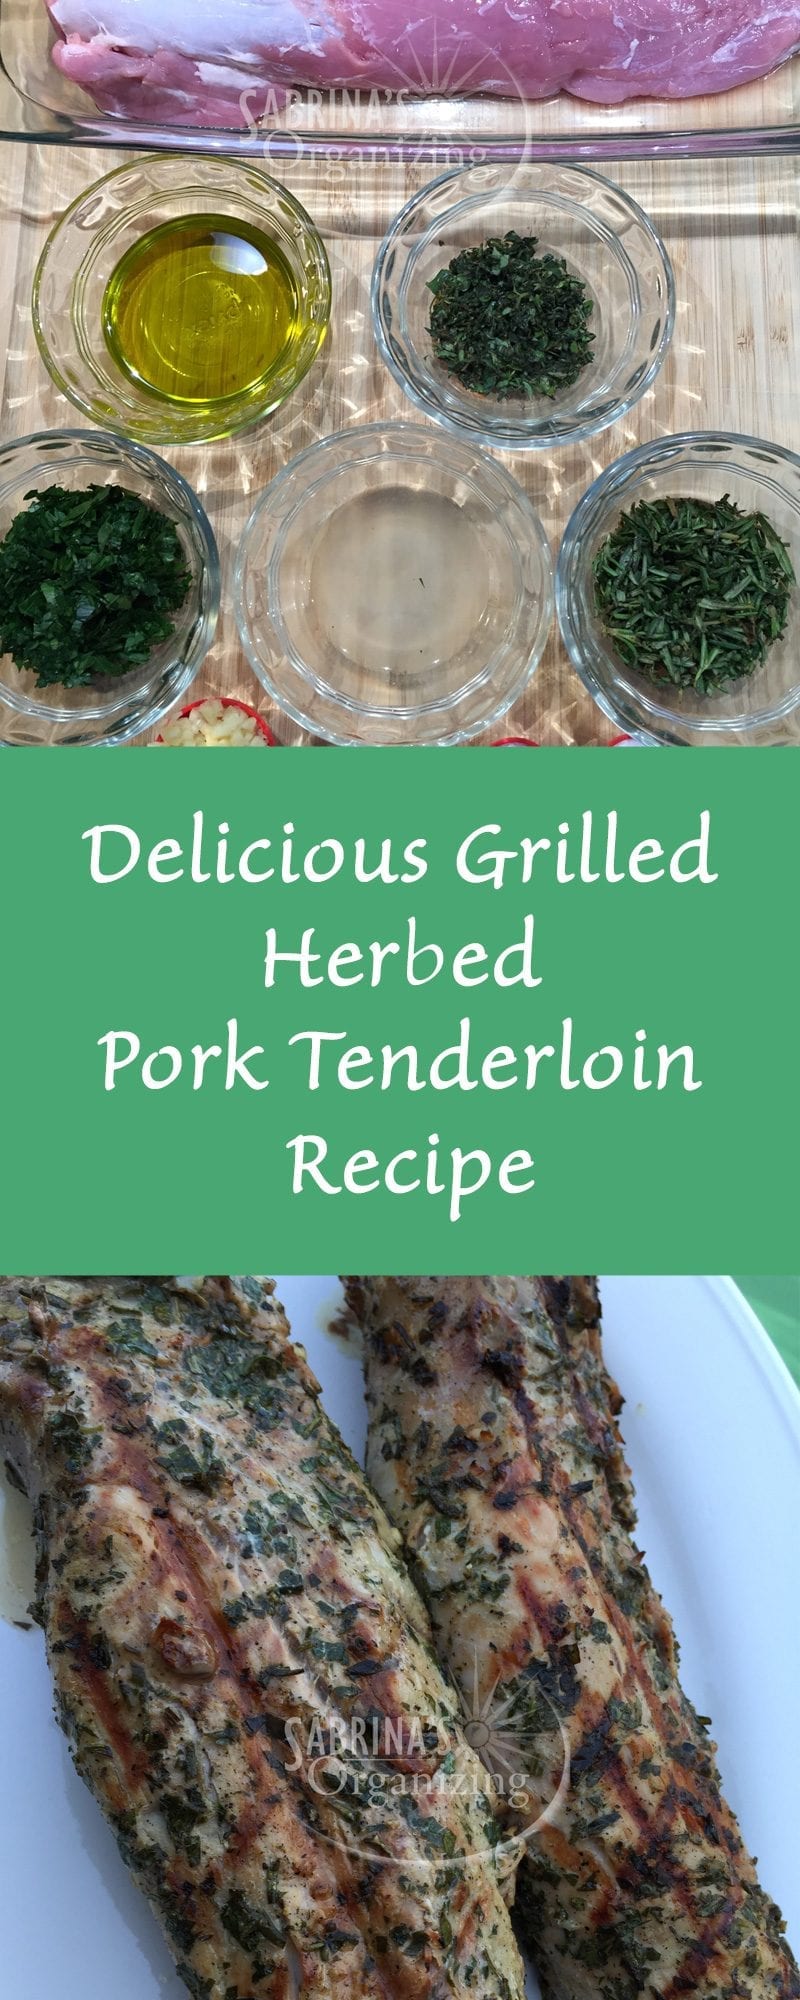 Grilled herbed pork tenderloin recipe 